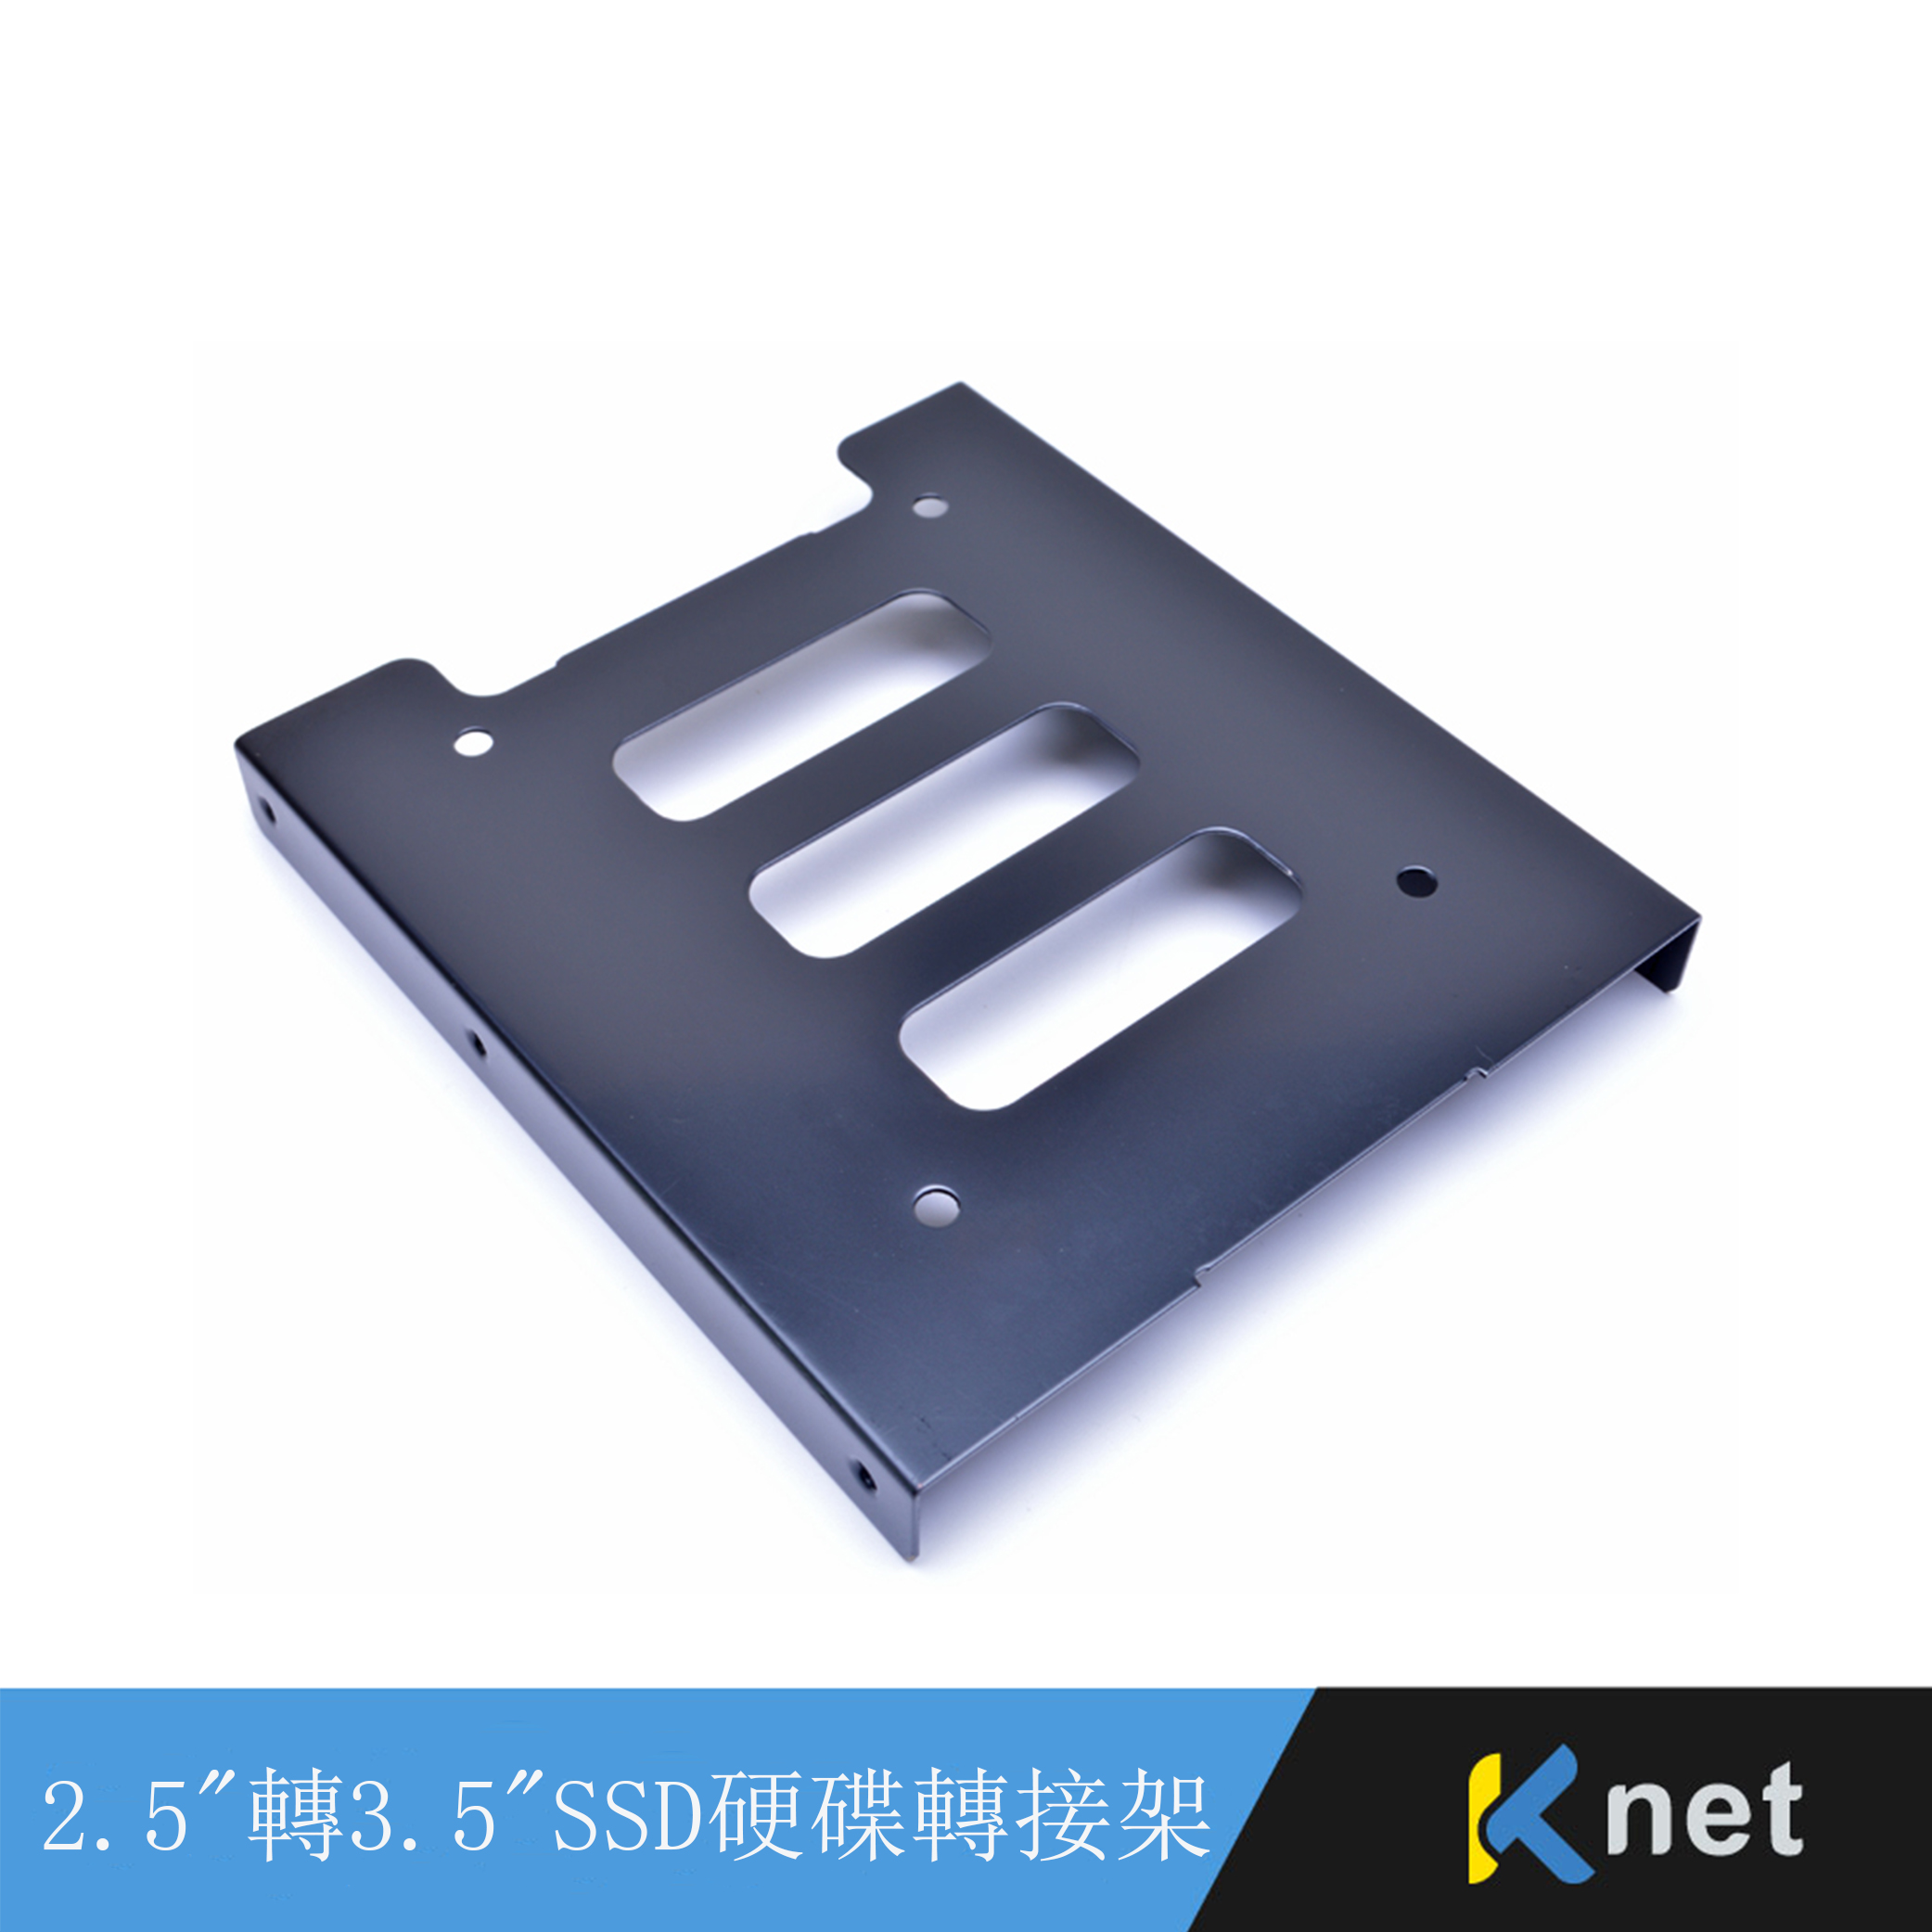 2.5" 轉3.5" SSD單硬碟轉接架